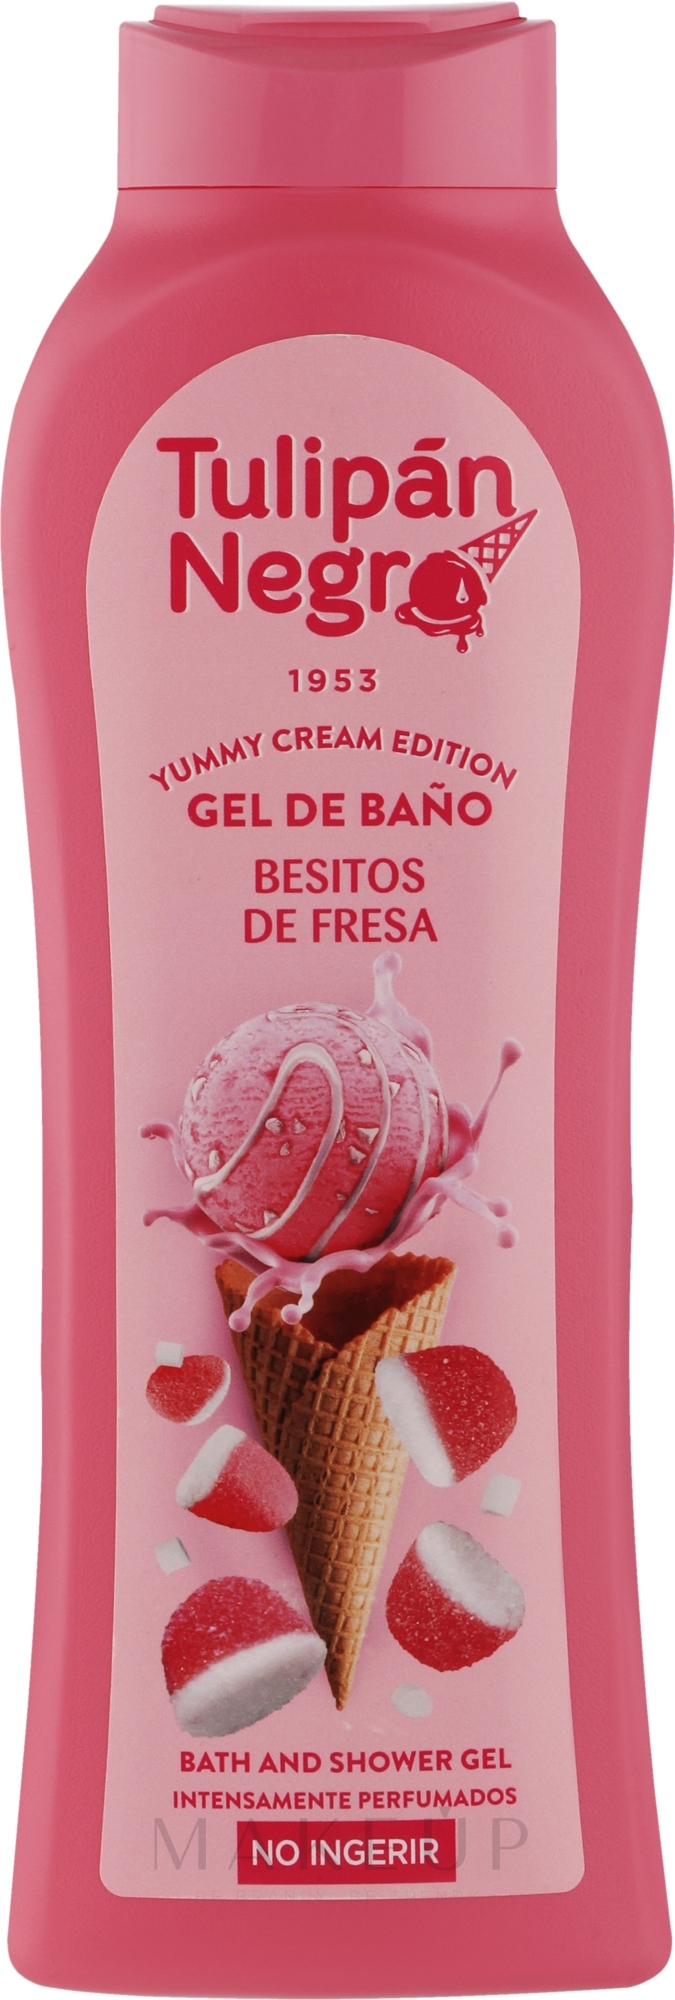 Bade- und Duschgel mit süßem Erdbeerduft - Tulipan Negro Yummy Cream Edition Strawberry Kisses Bath And Shower Gel  — Bild 650 ml